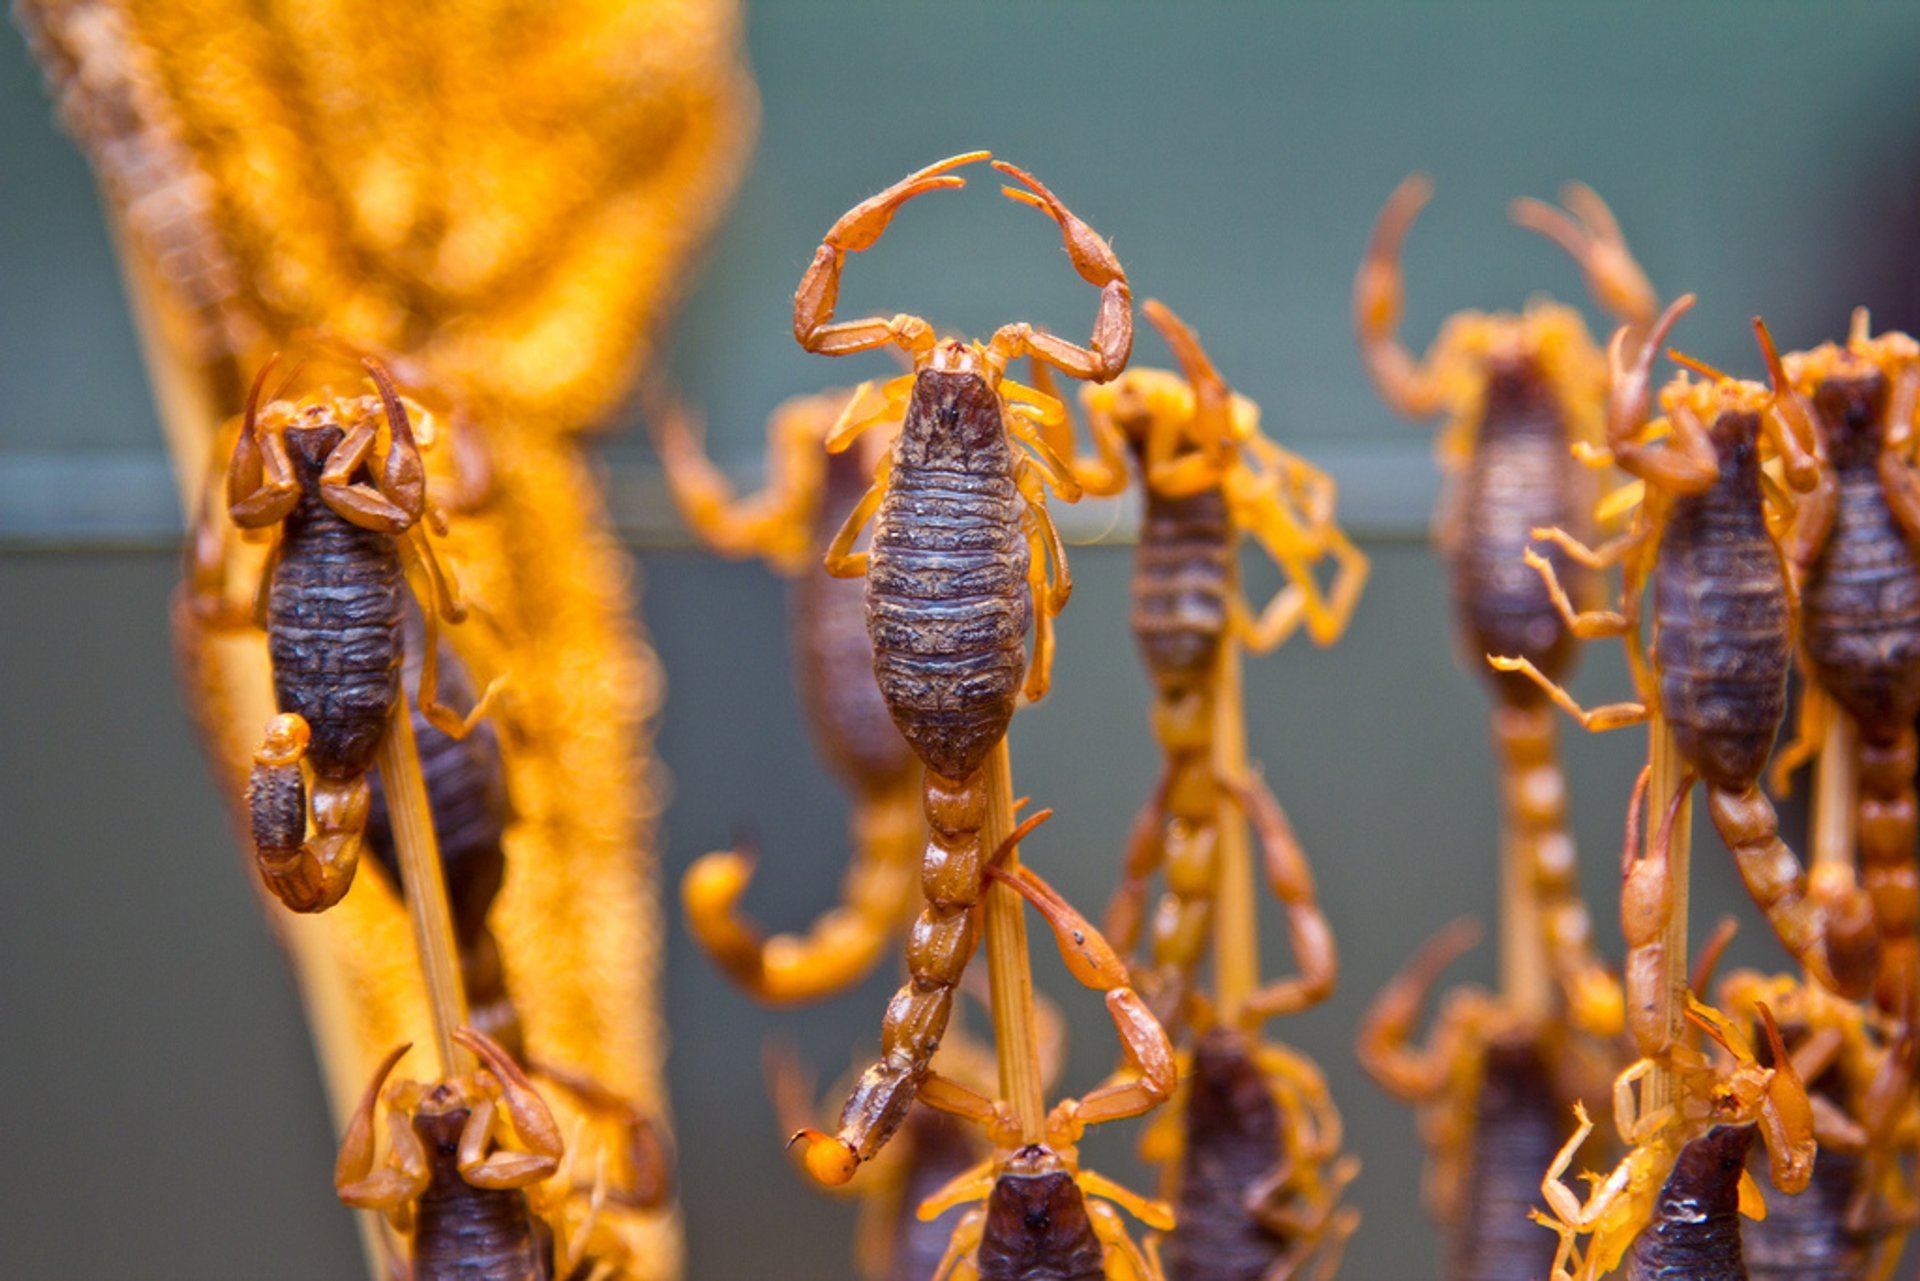 Fried Scorpions